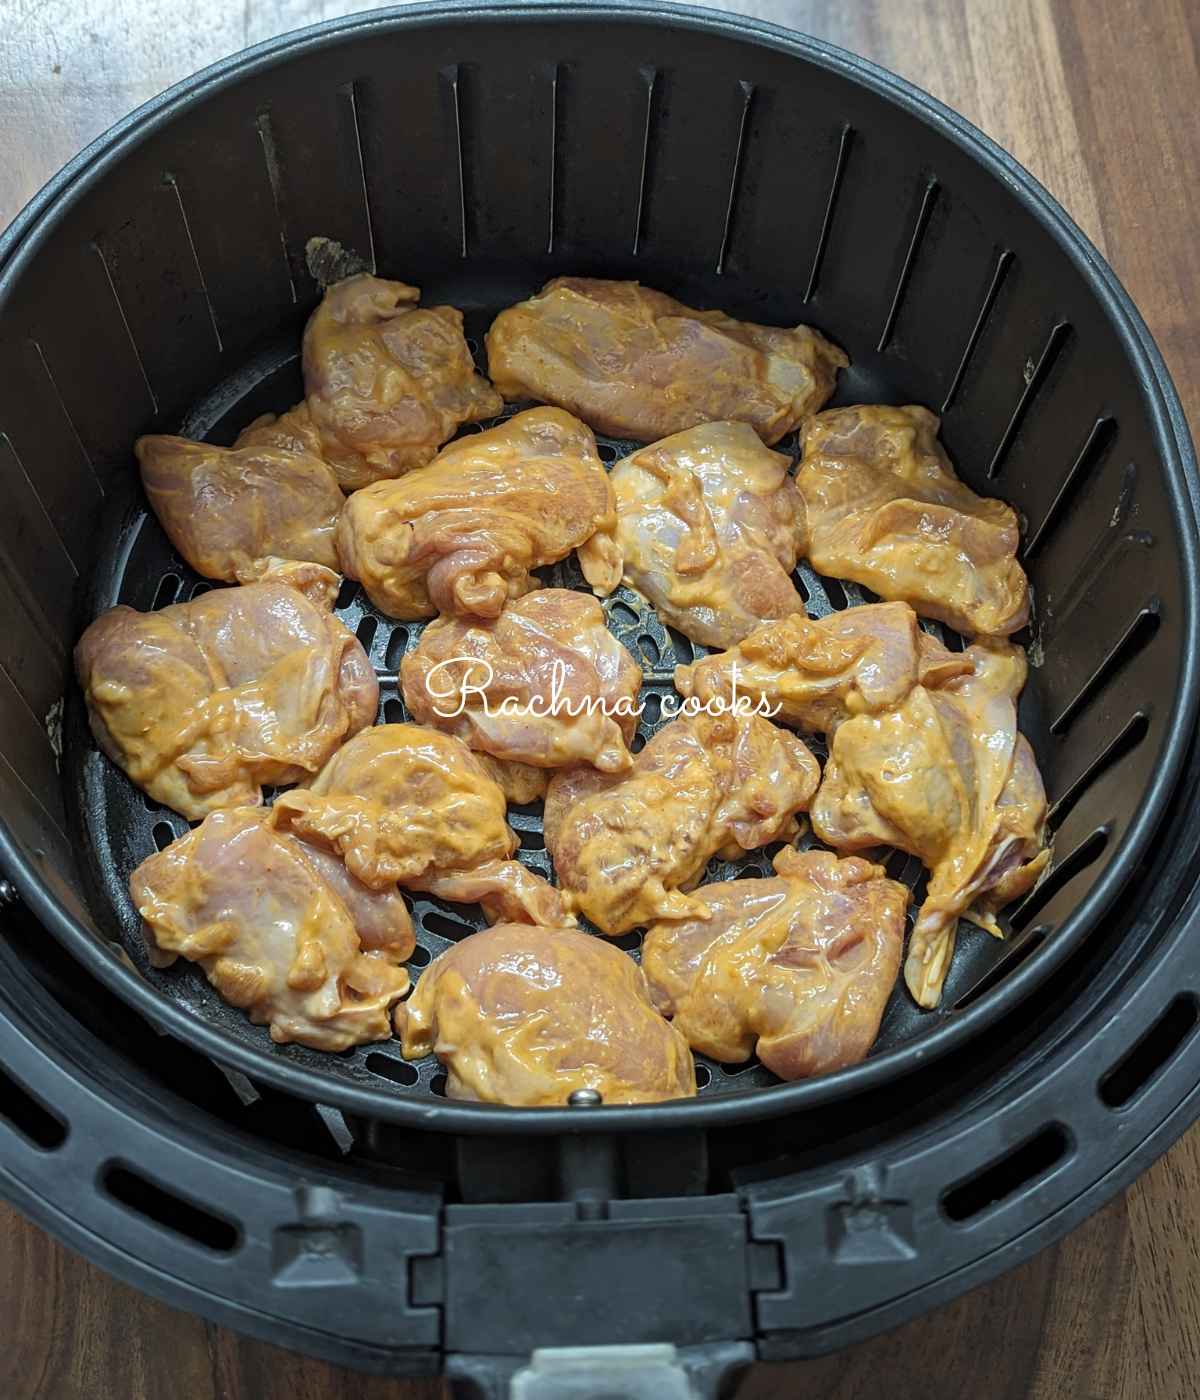 Marinated chicken bites laid in air fryer basket.